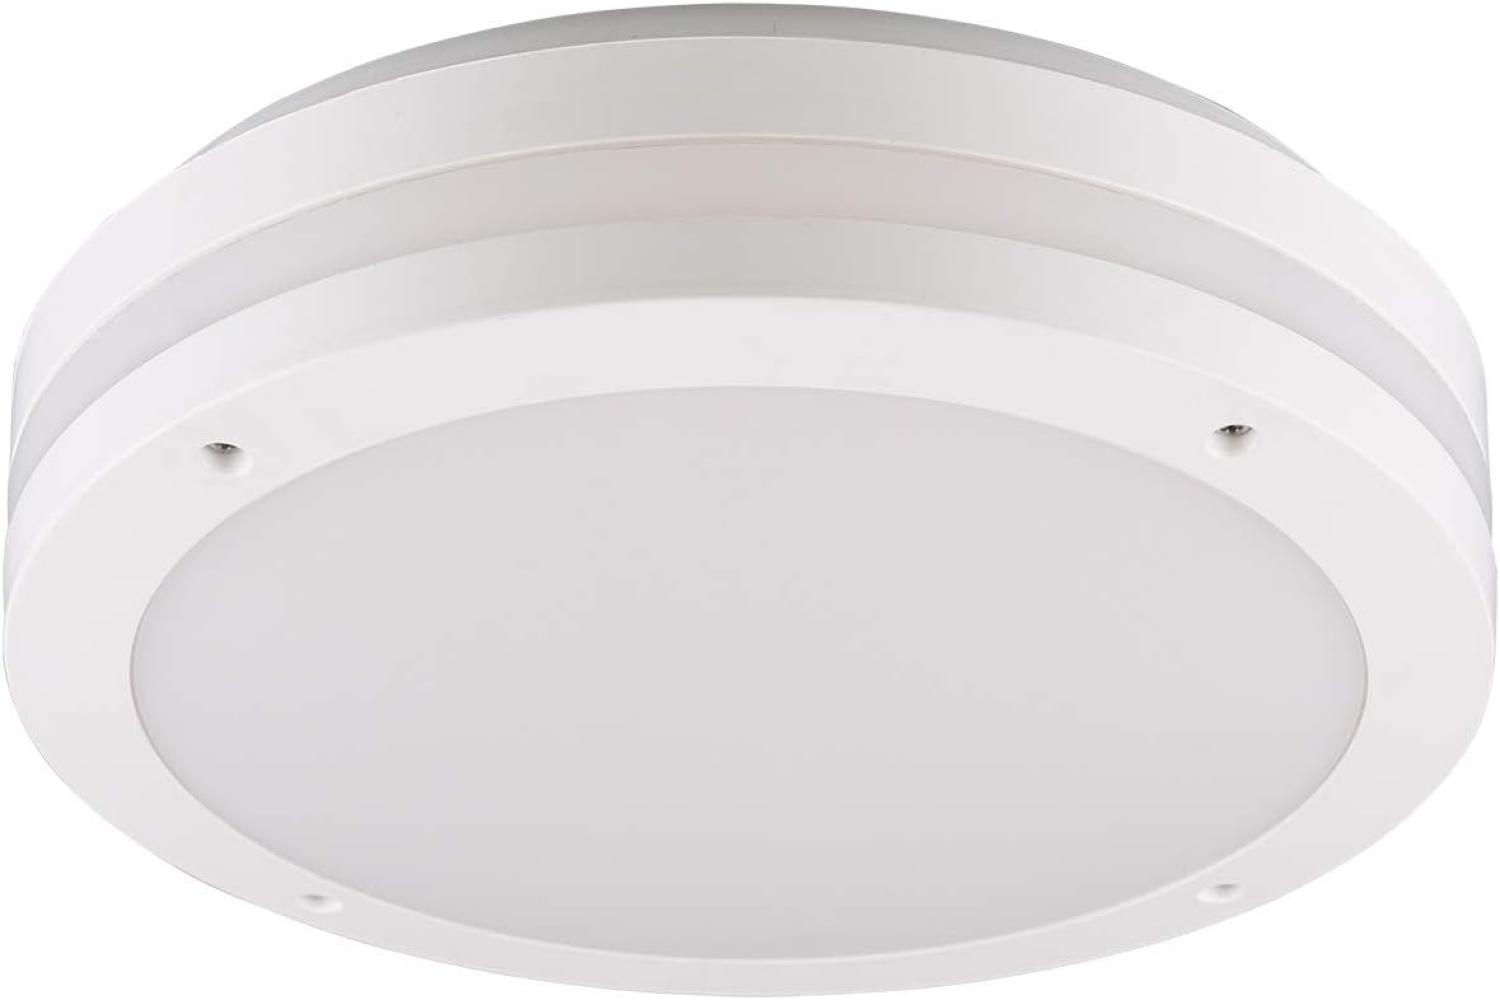 LED Außen Deckenleuchte / Wandleuchte PIAVE mit Bewegungsmelder in Weiß, Ø30 Bild 1